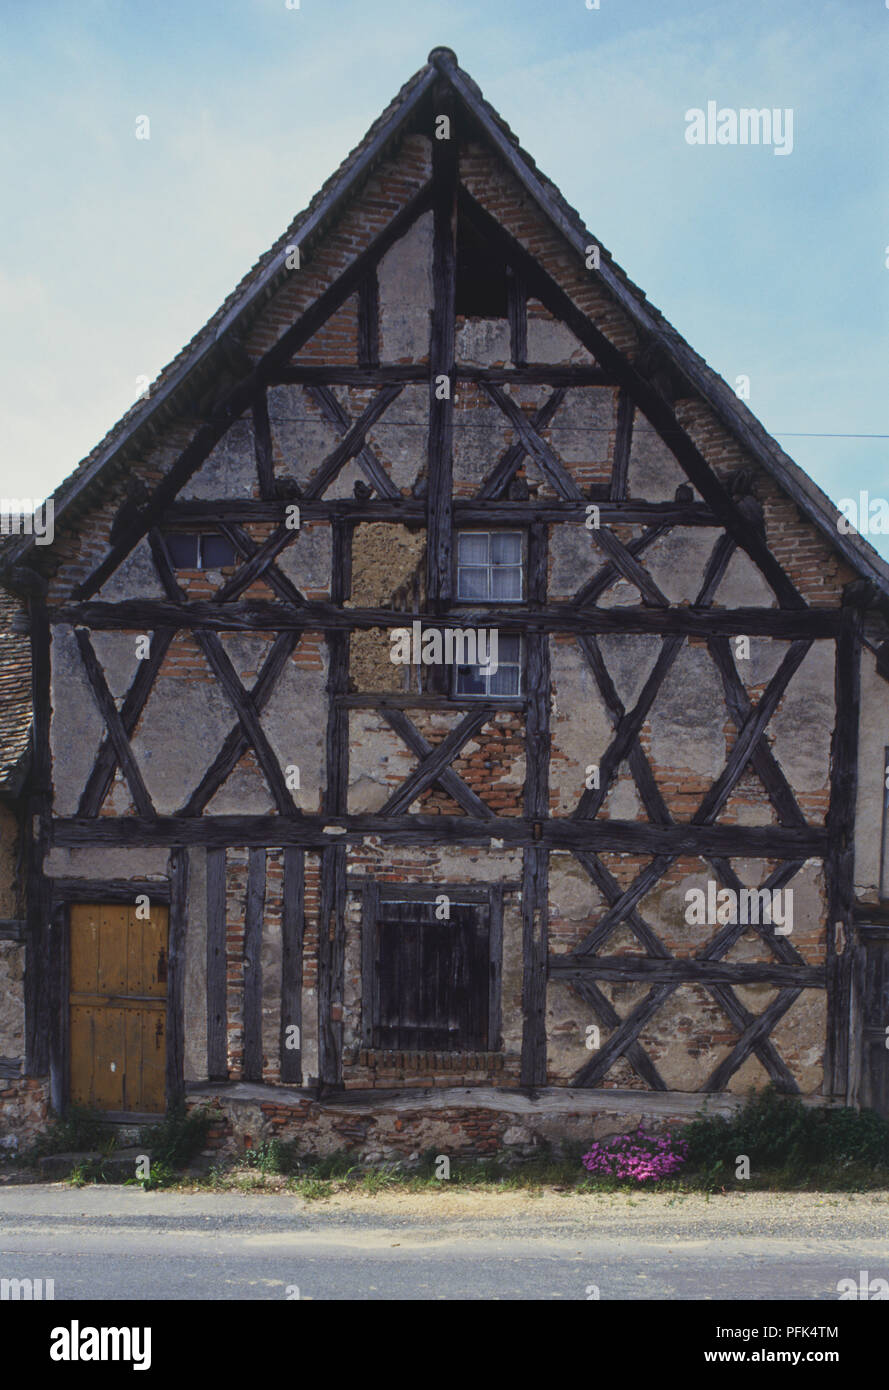 France, vallée de la Loire, Sologne, façade de maison à pans de bois patiné Banque D'Images